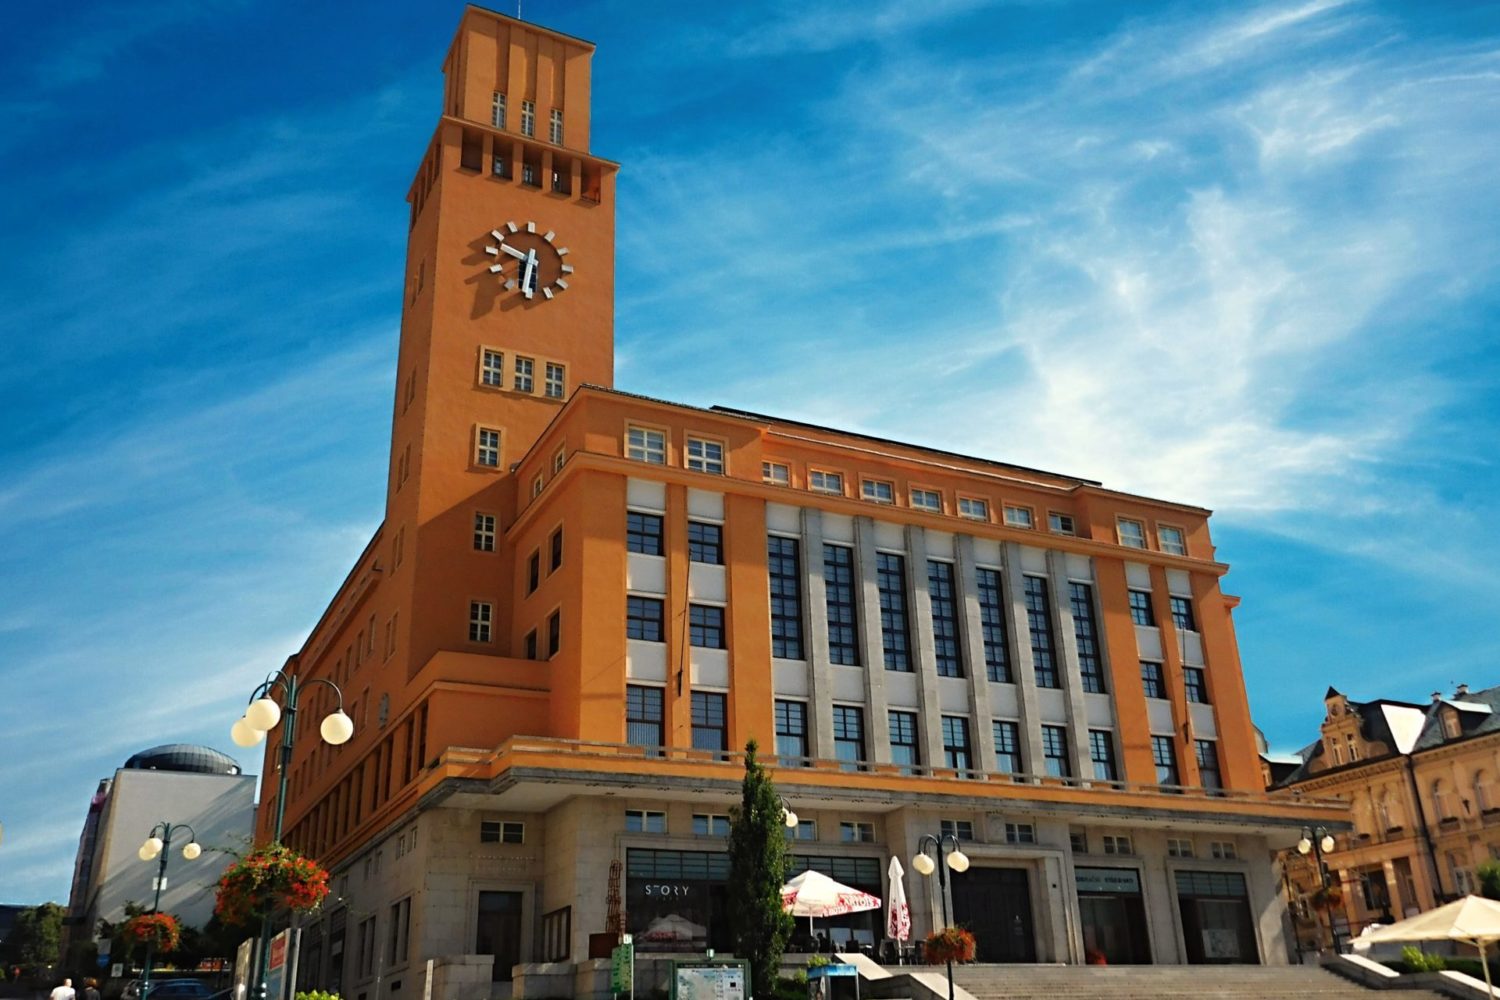 Pohled na funkcionalistickou radncici v Jablonci nad Nisou – hlavní vchod z Mírového náměstí